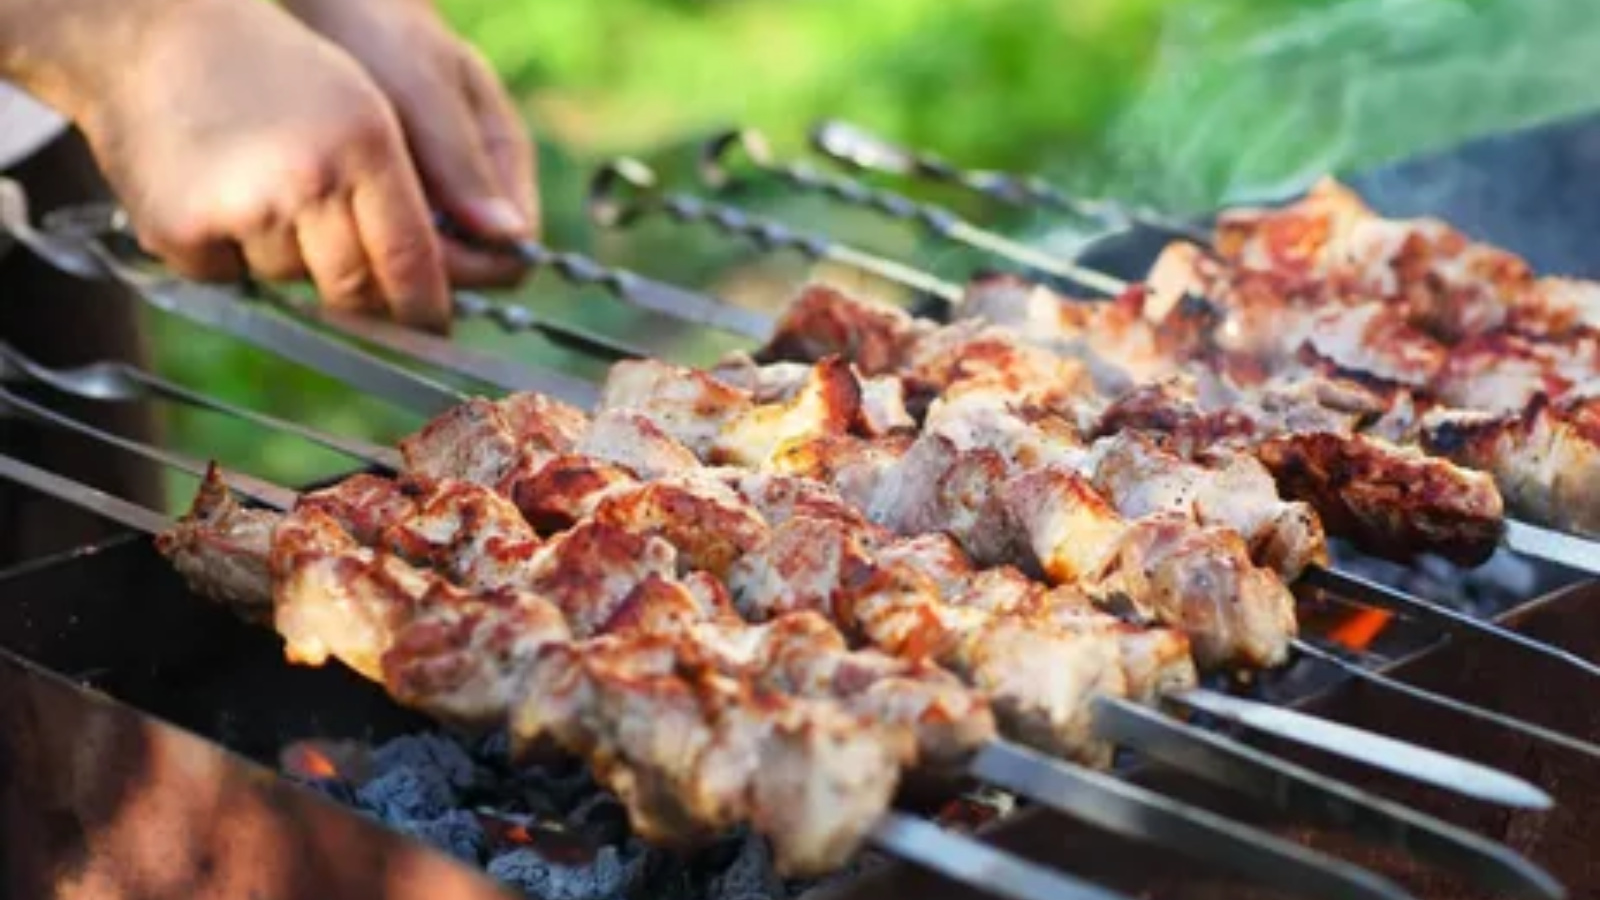 Роспотребнадзор напоминает об особенностях приготовления мясных блюд на открытом огне